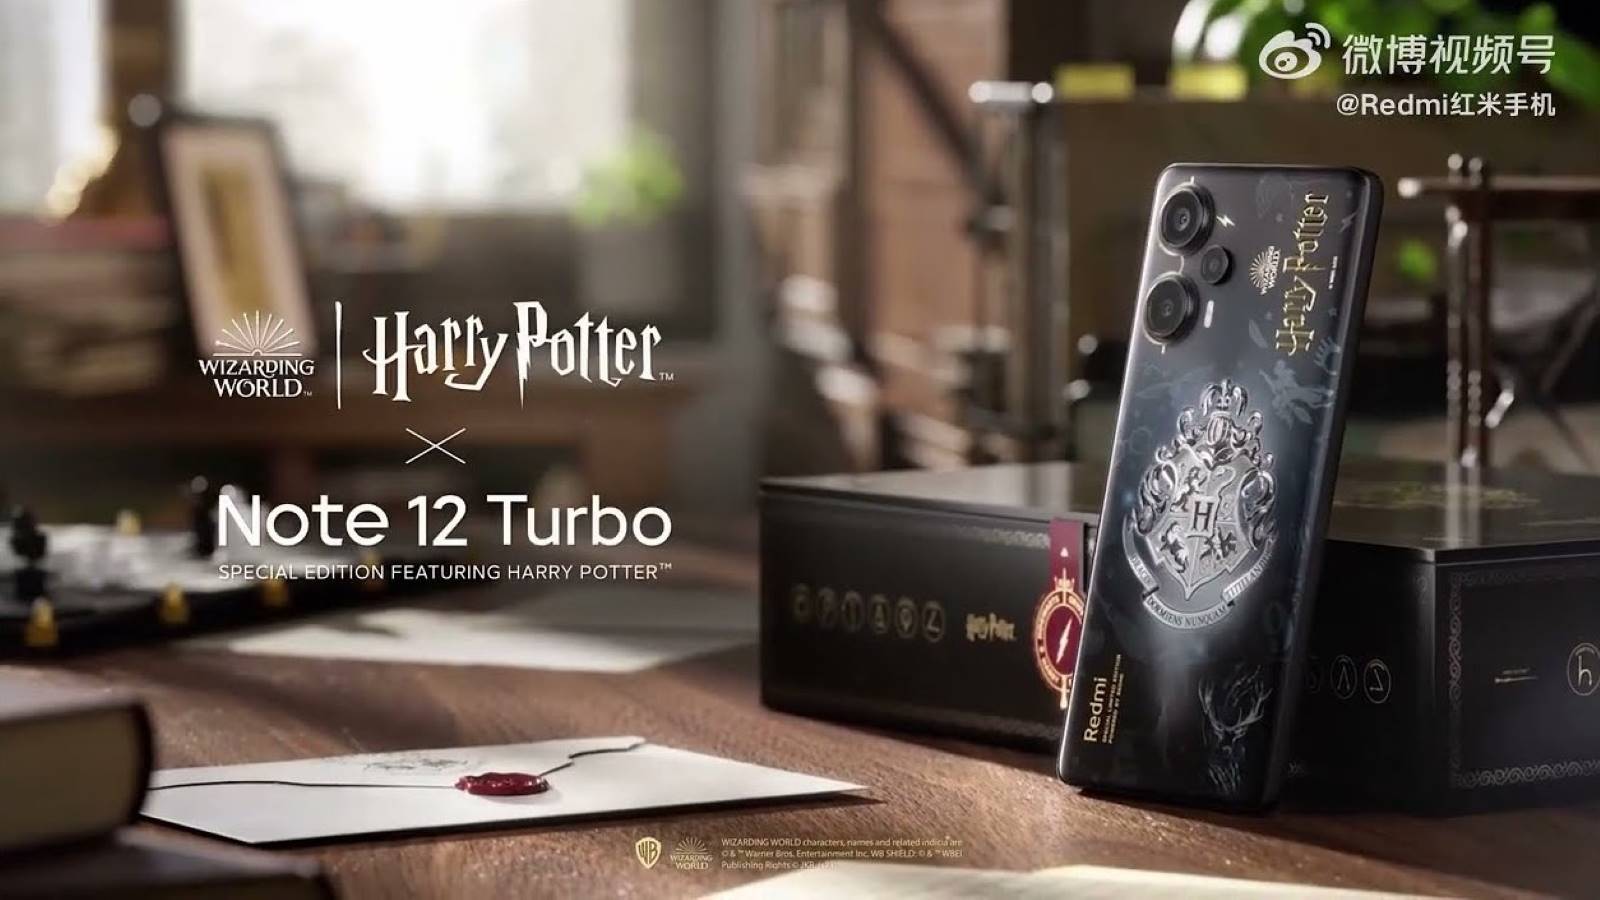 Cận cảnh Redmi Note 12 Turbo: Thiết kế bắt mắt, viền siêu mỏng, giá chỉ từ 6,8 triệu đồng